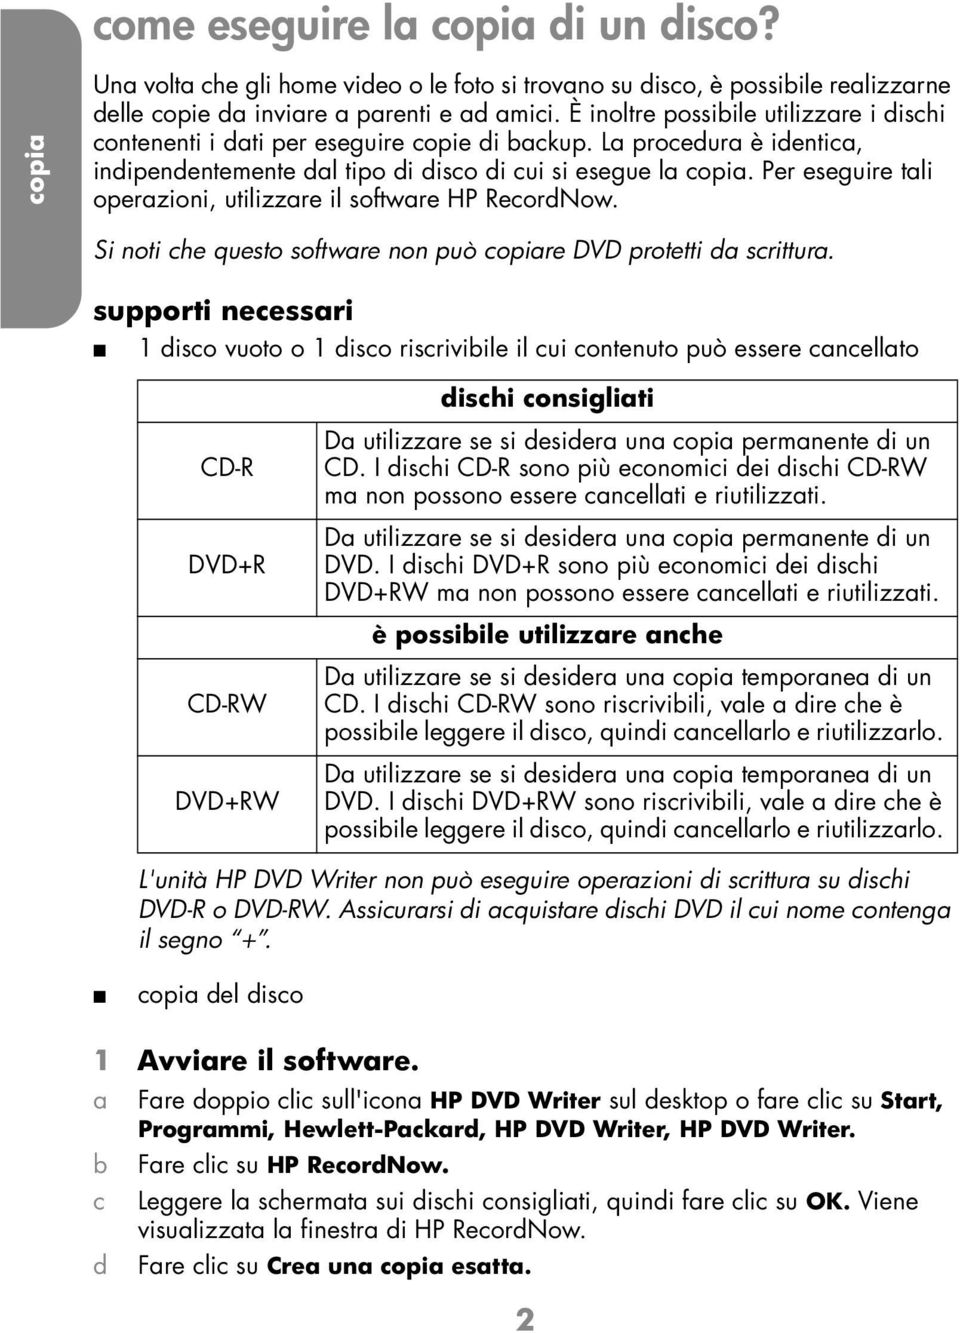 Per eseguire tli operzioni, utilizzre il softwre HP ReordNow. Si noti he questo softwre non può opire DVD protetti d srittur.